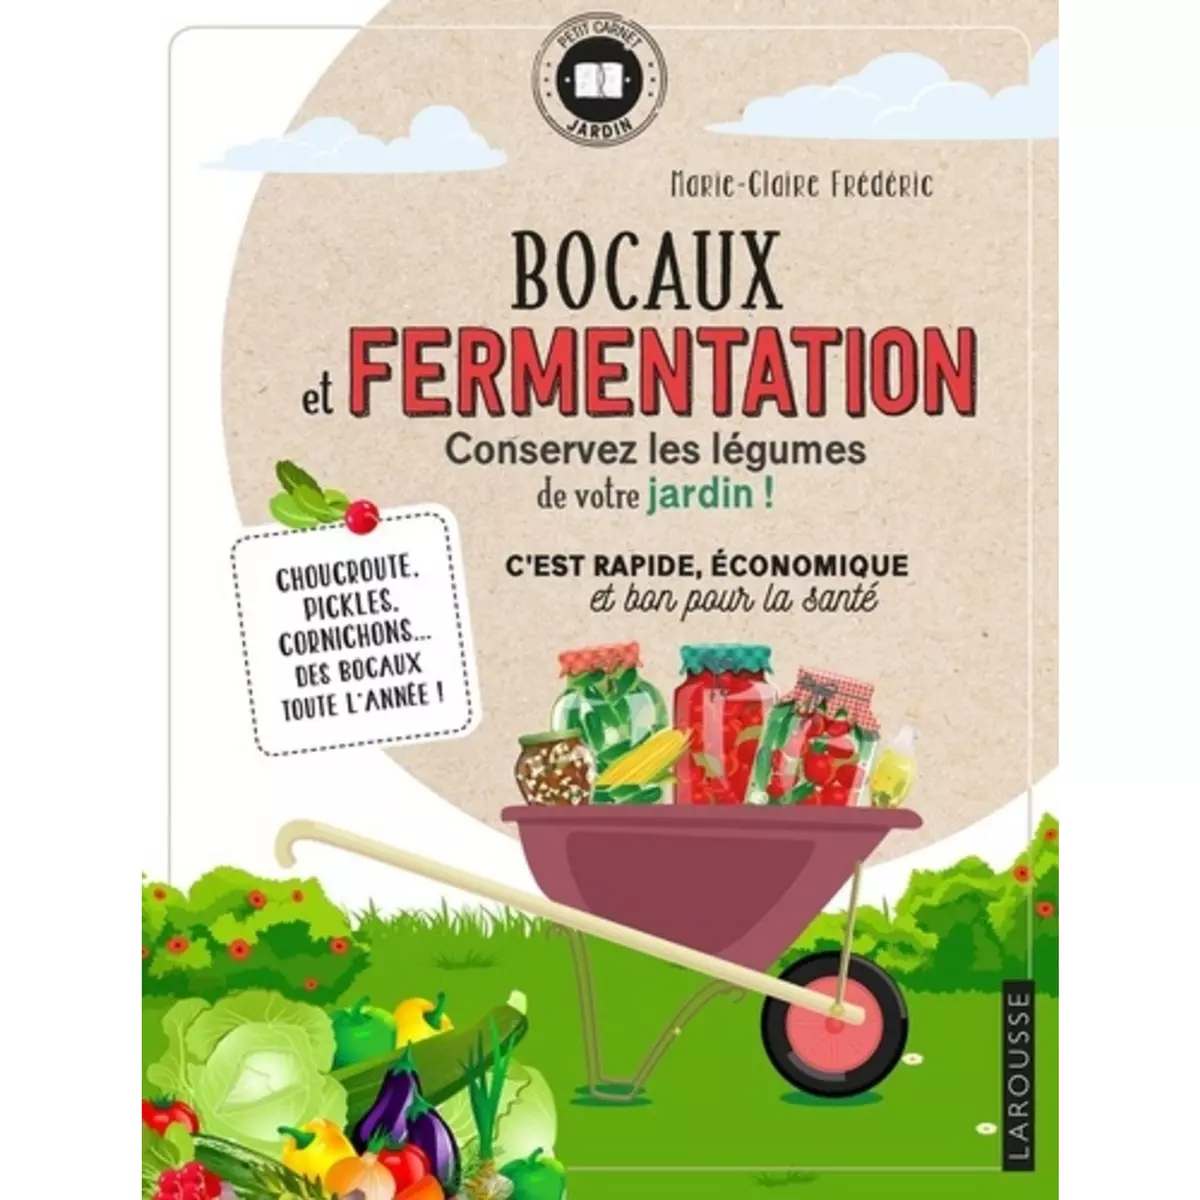  BOCAUX ET FERMENTATION. CONSERVEZ LES LEGUMES DE VOTRE JARDIN !, Frédéric Marie-Claire